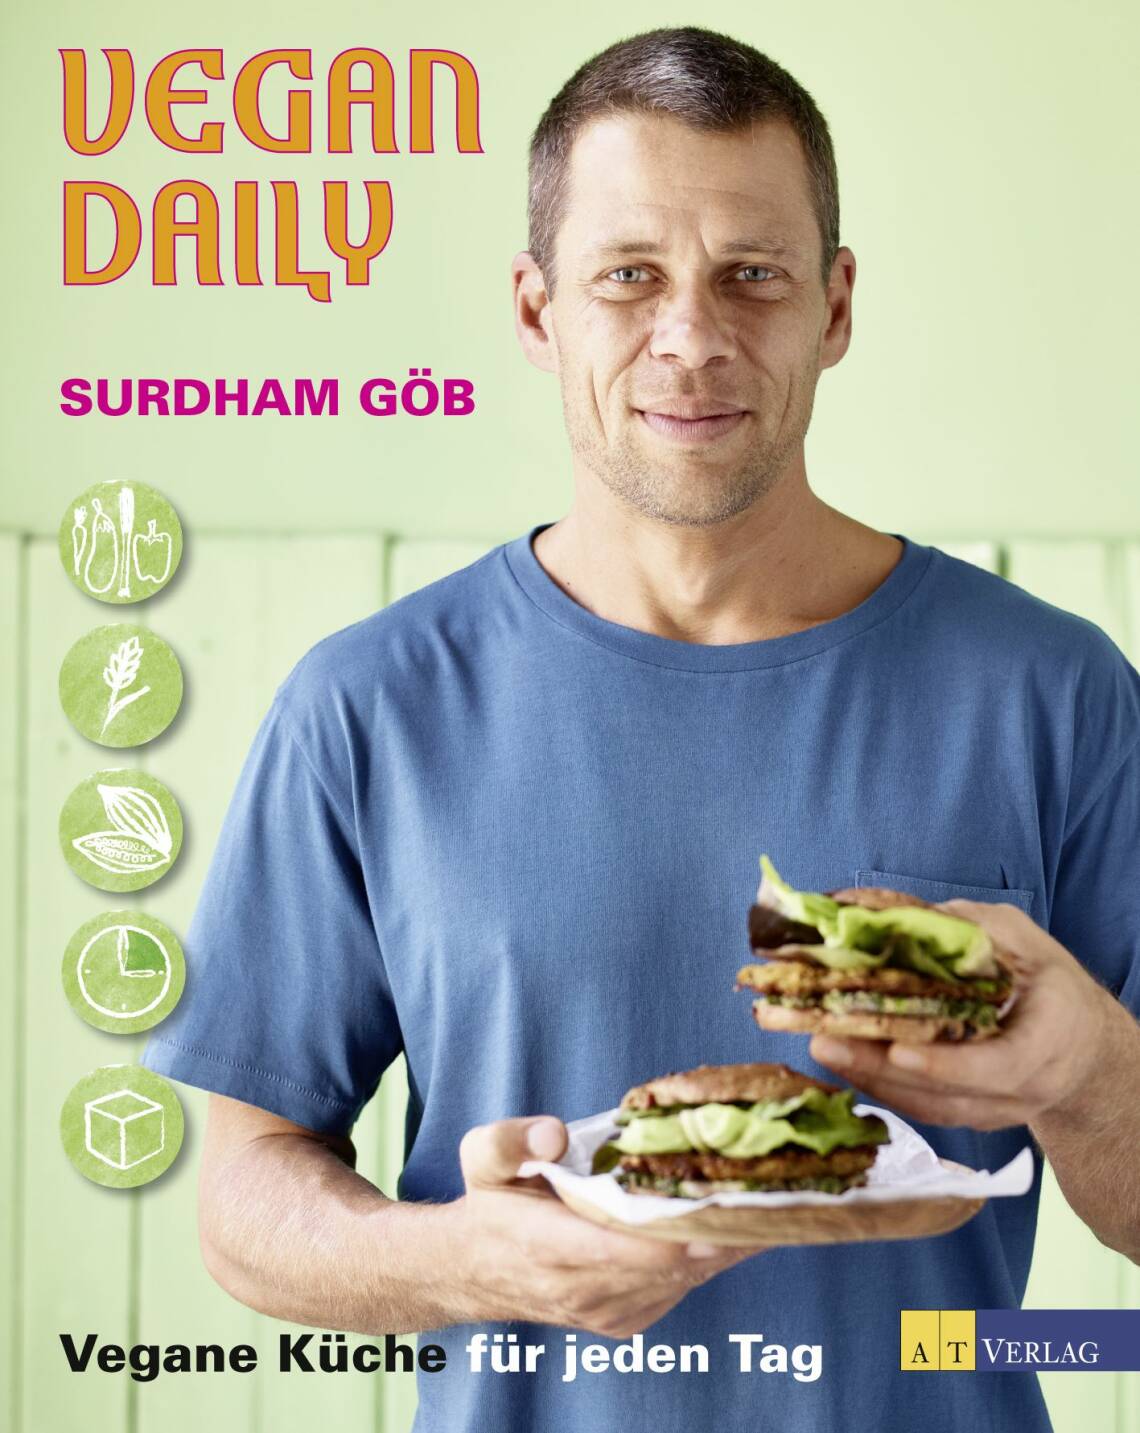 Vegan Daily von Surdham Göb